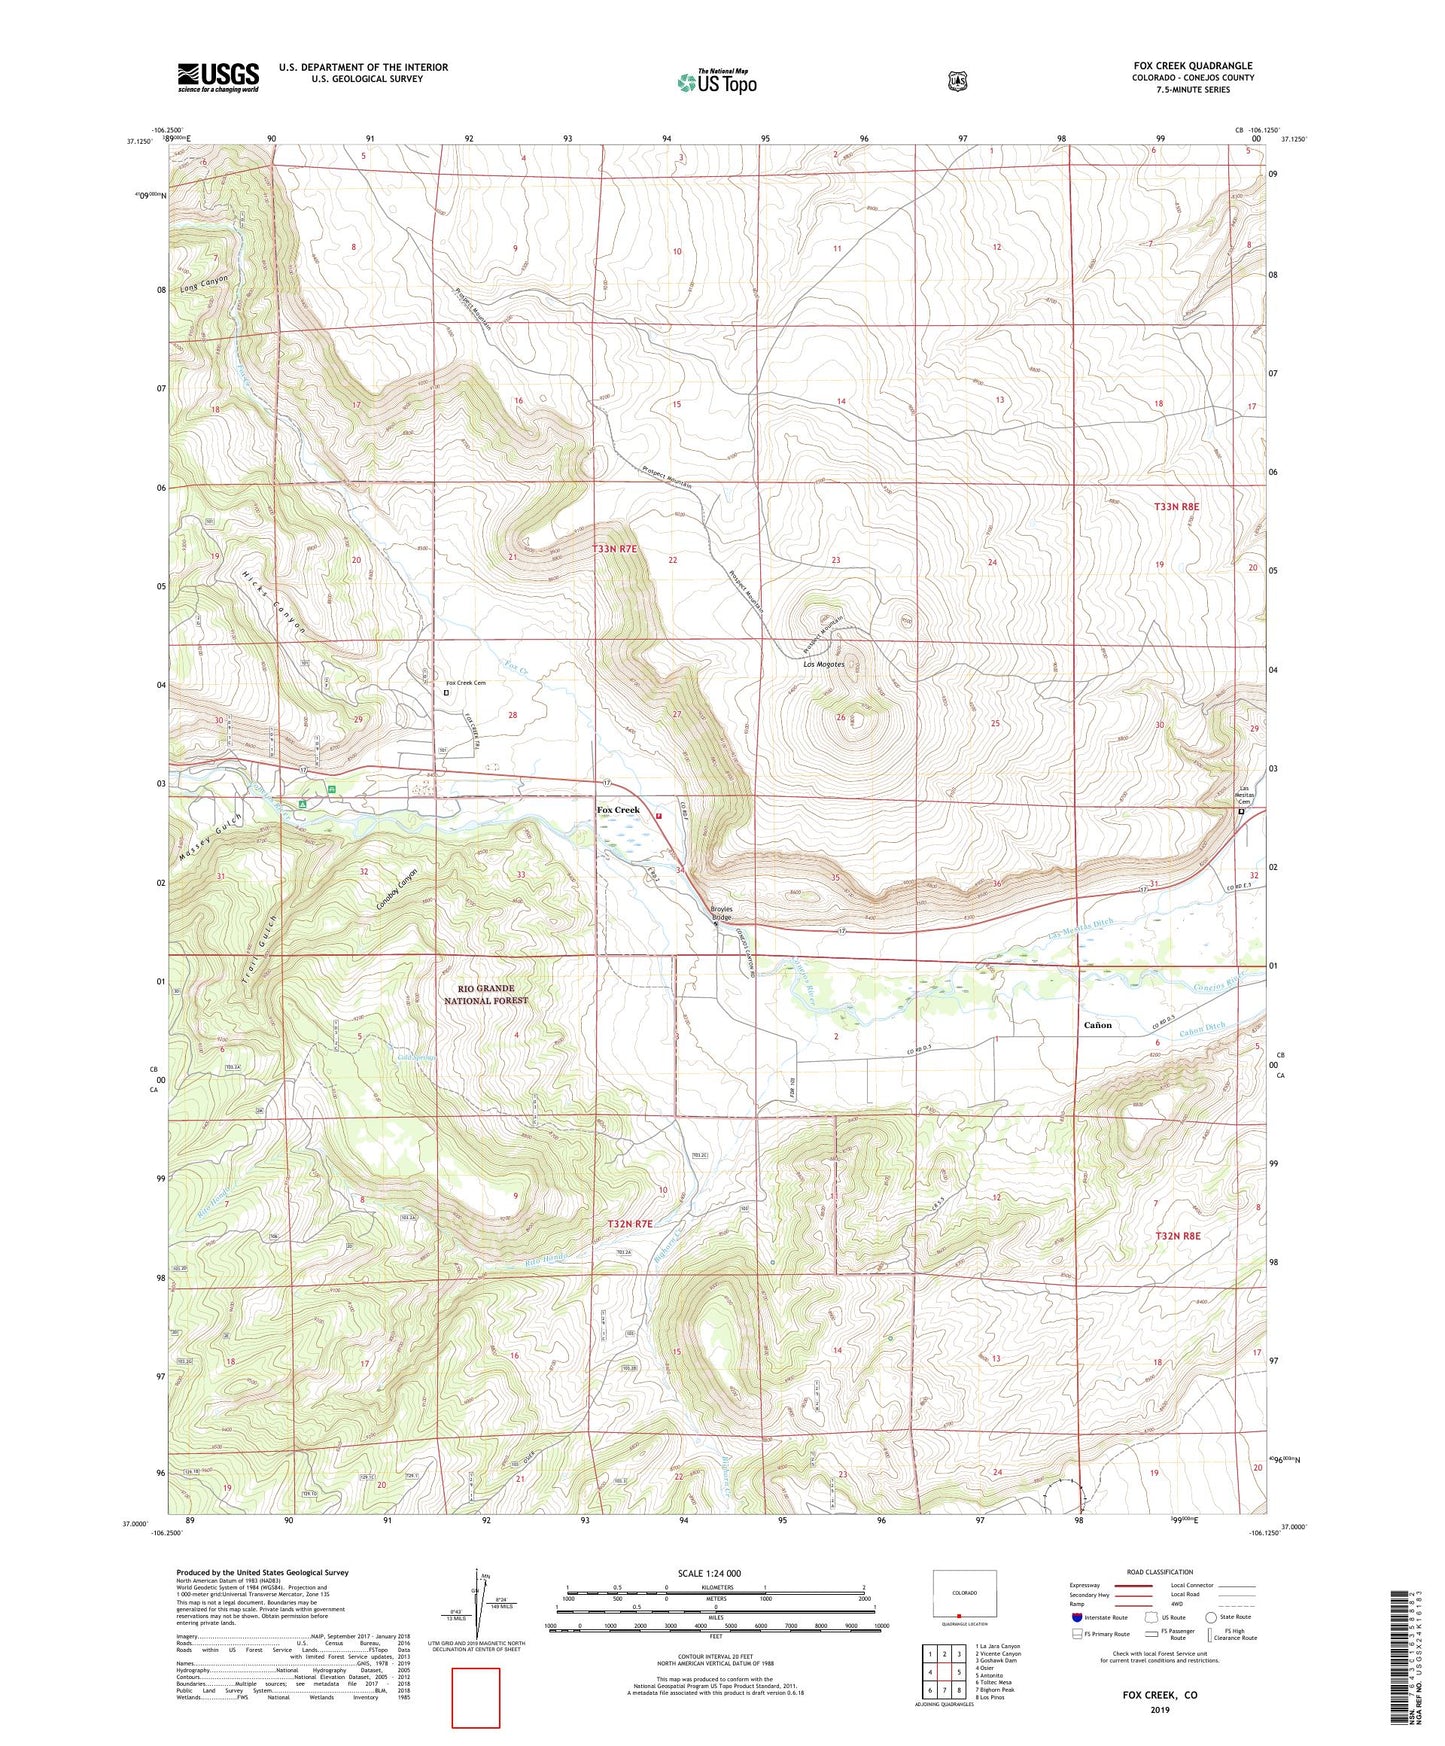 Fox Creek Colorado US Topo Map Image